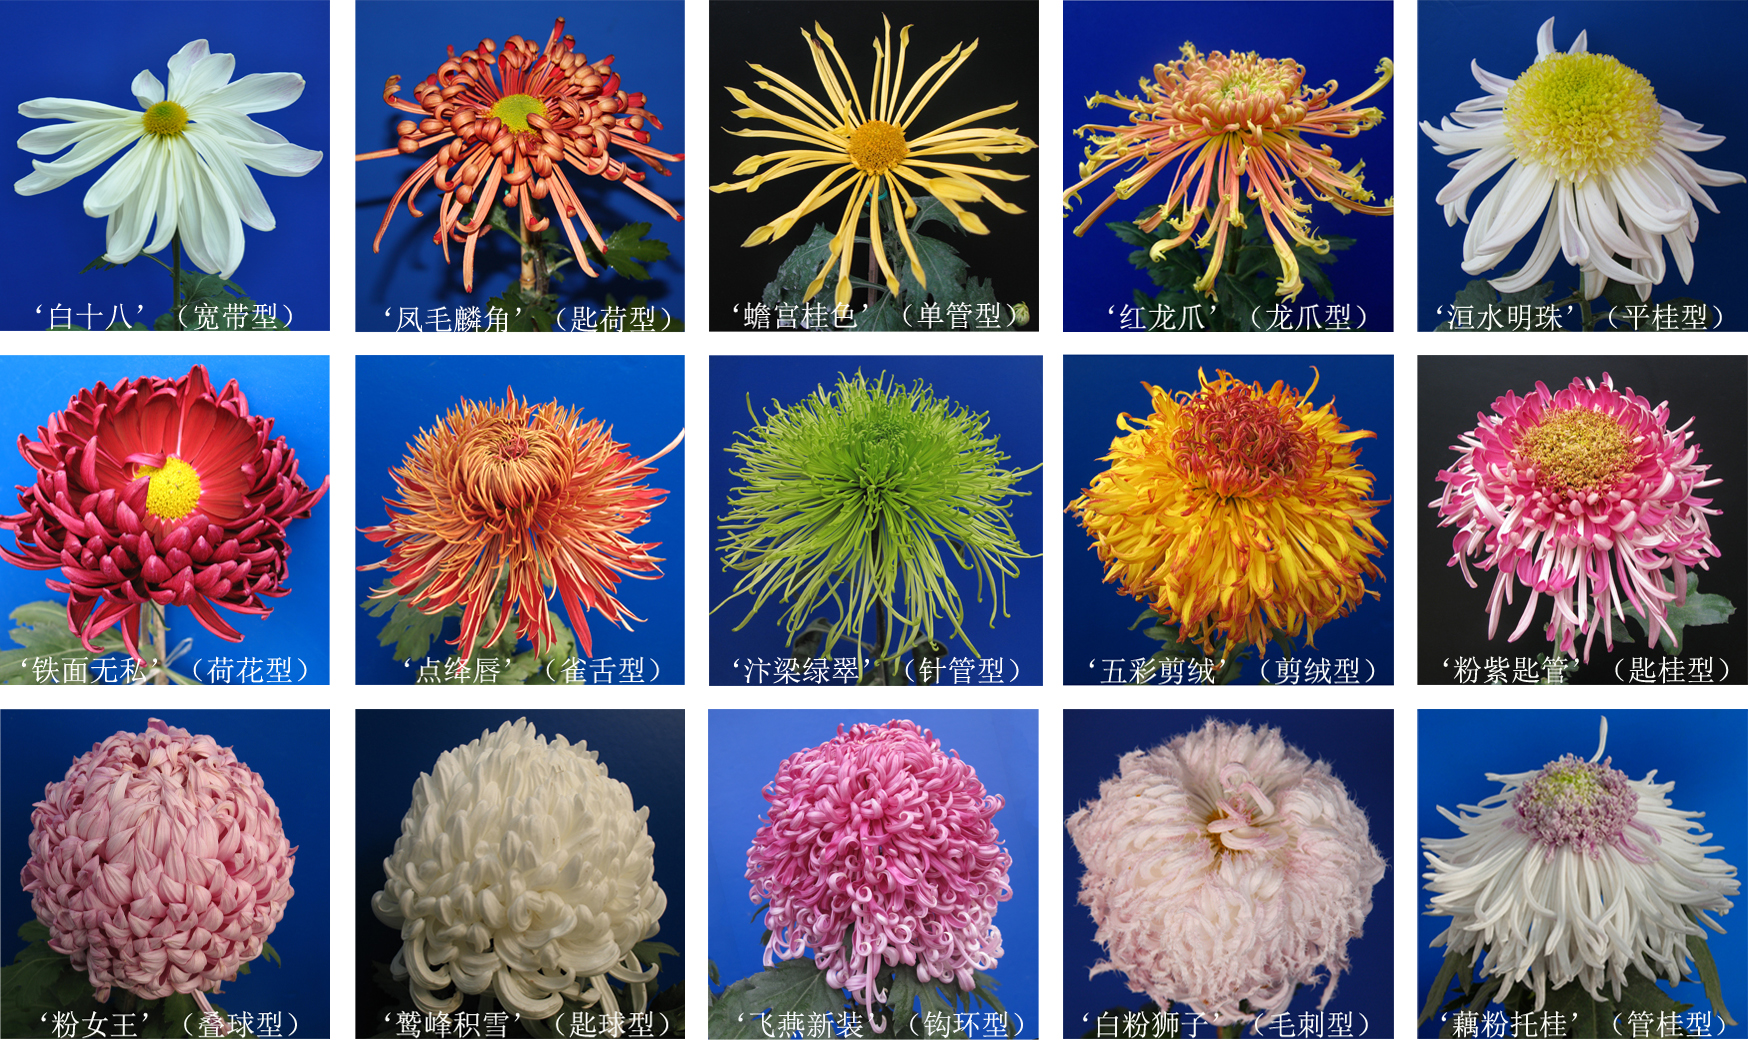 菊花头状花序形态多样性